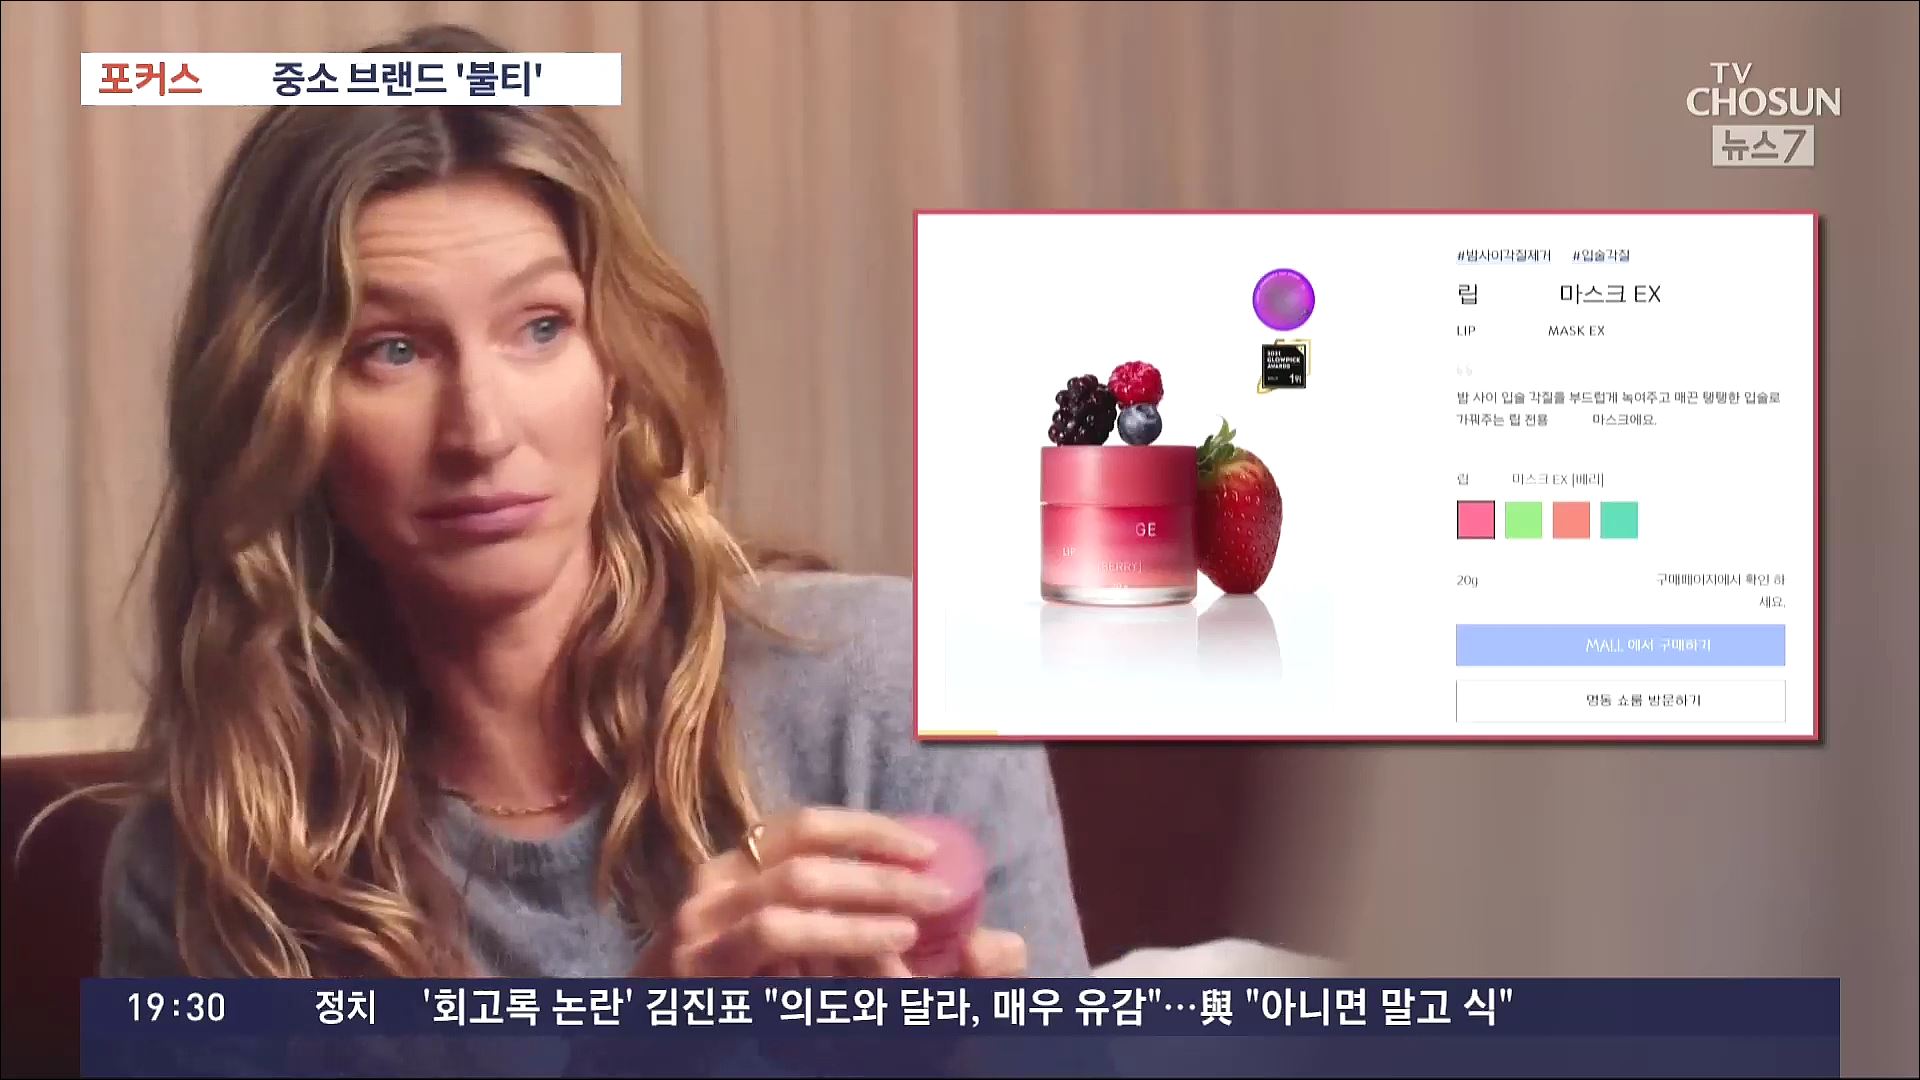 [포커스] 아시아 넘어 미국도 반한 'K-화장품'…중소 브랜드 '불티'